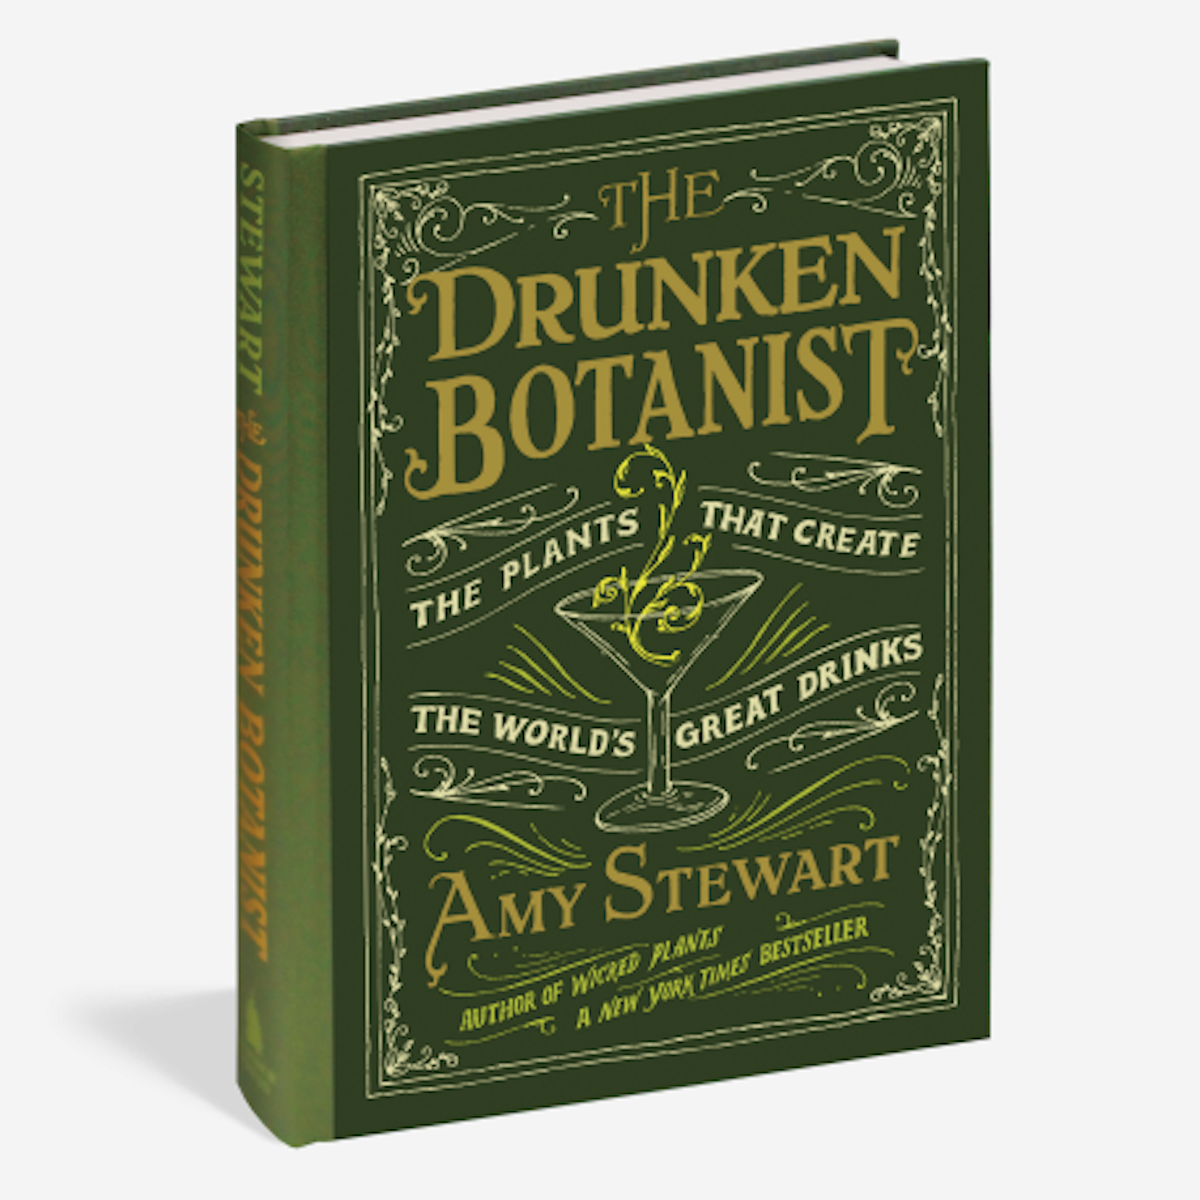 Amy Stewart The Drunken Botanist: 10th anniversary additon